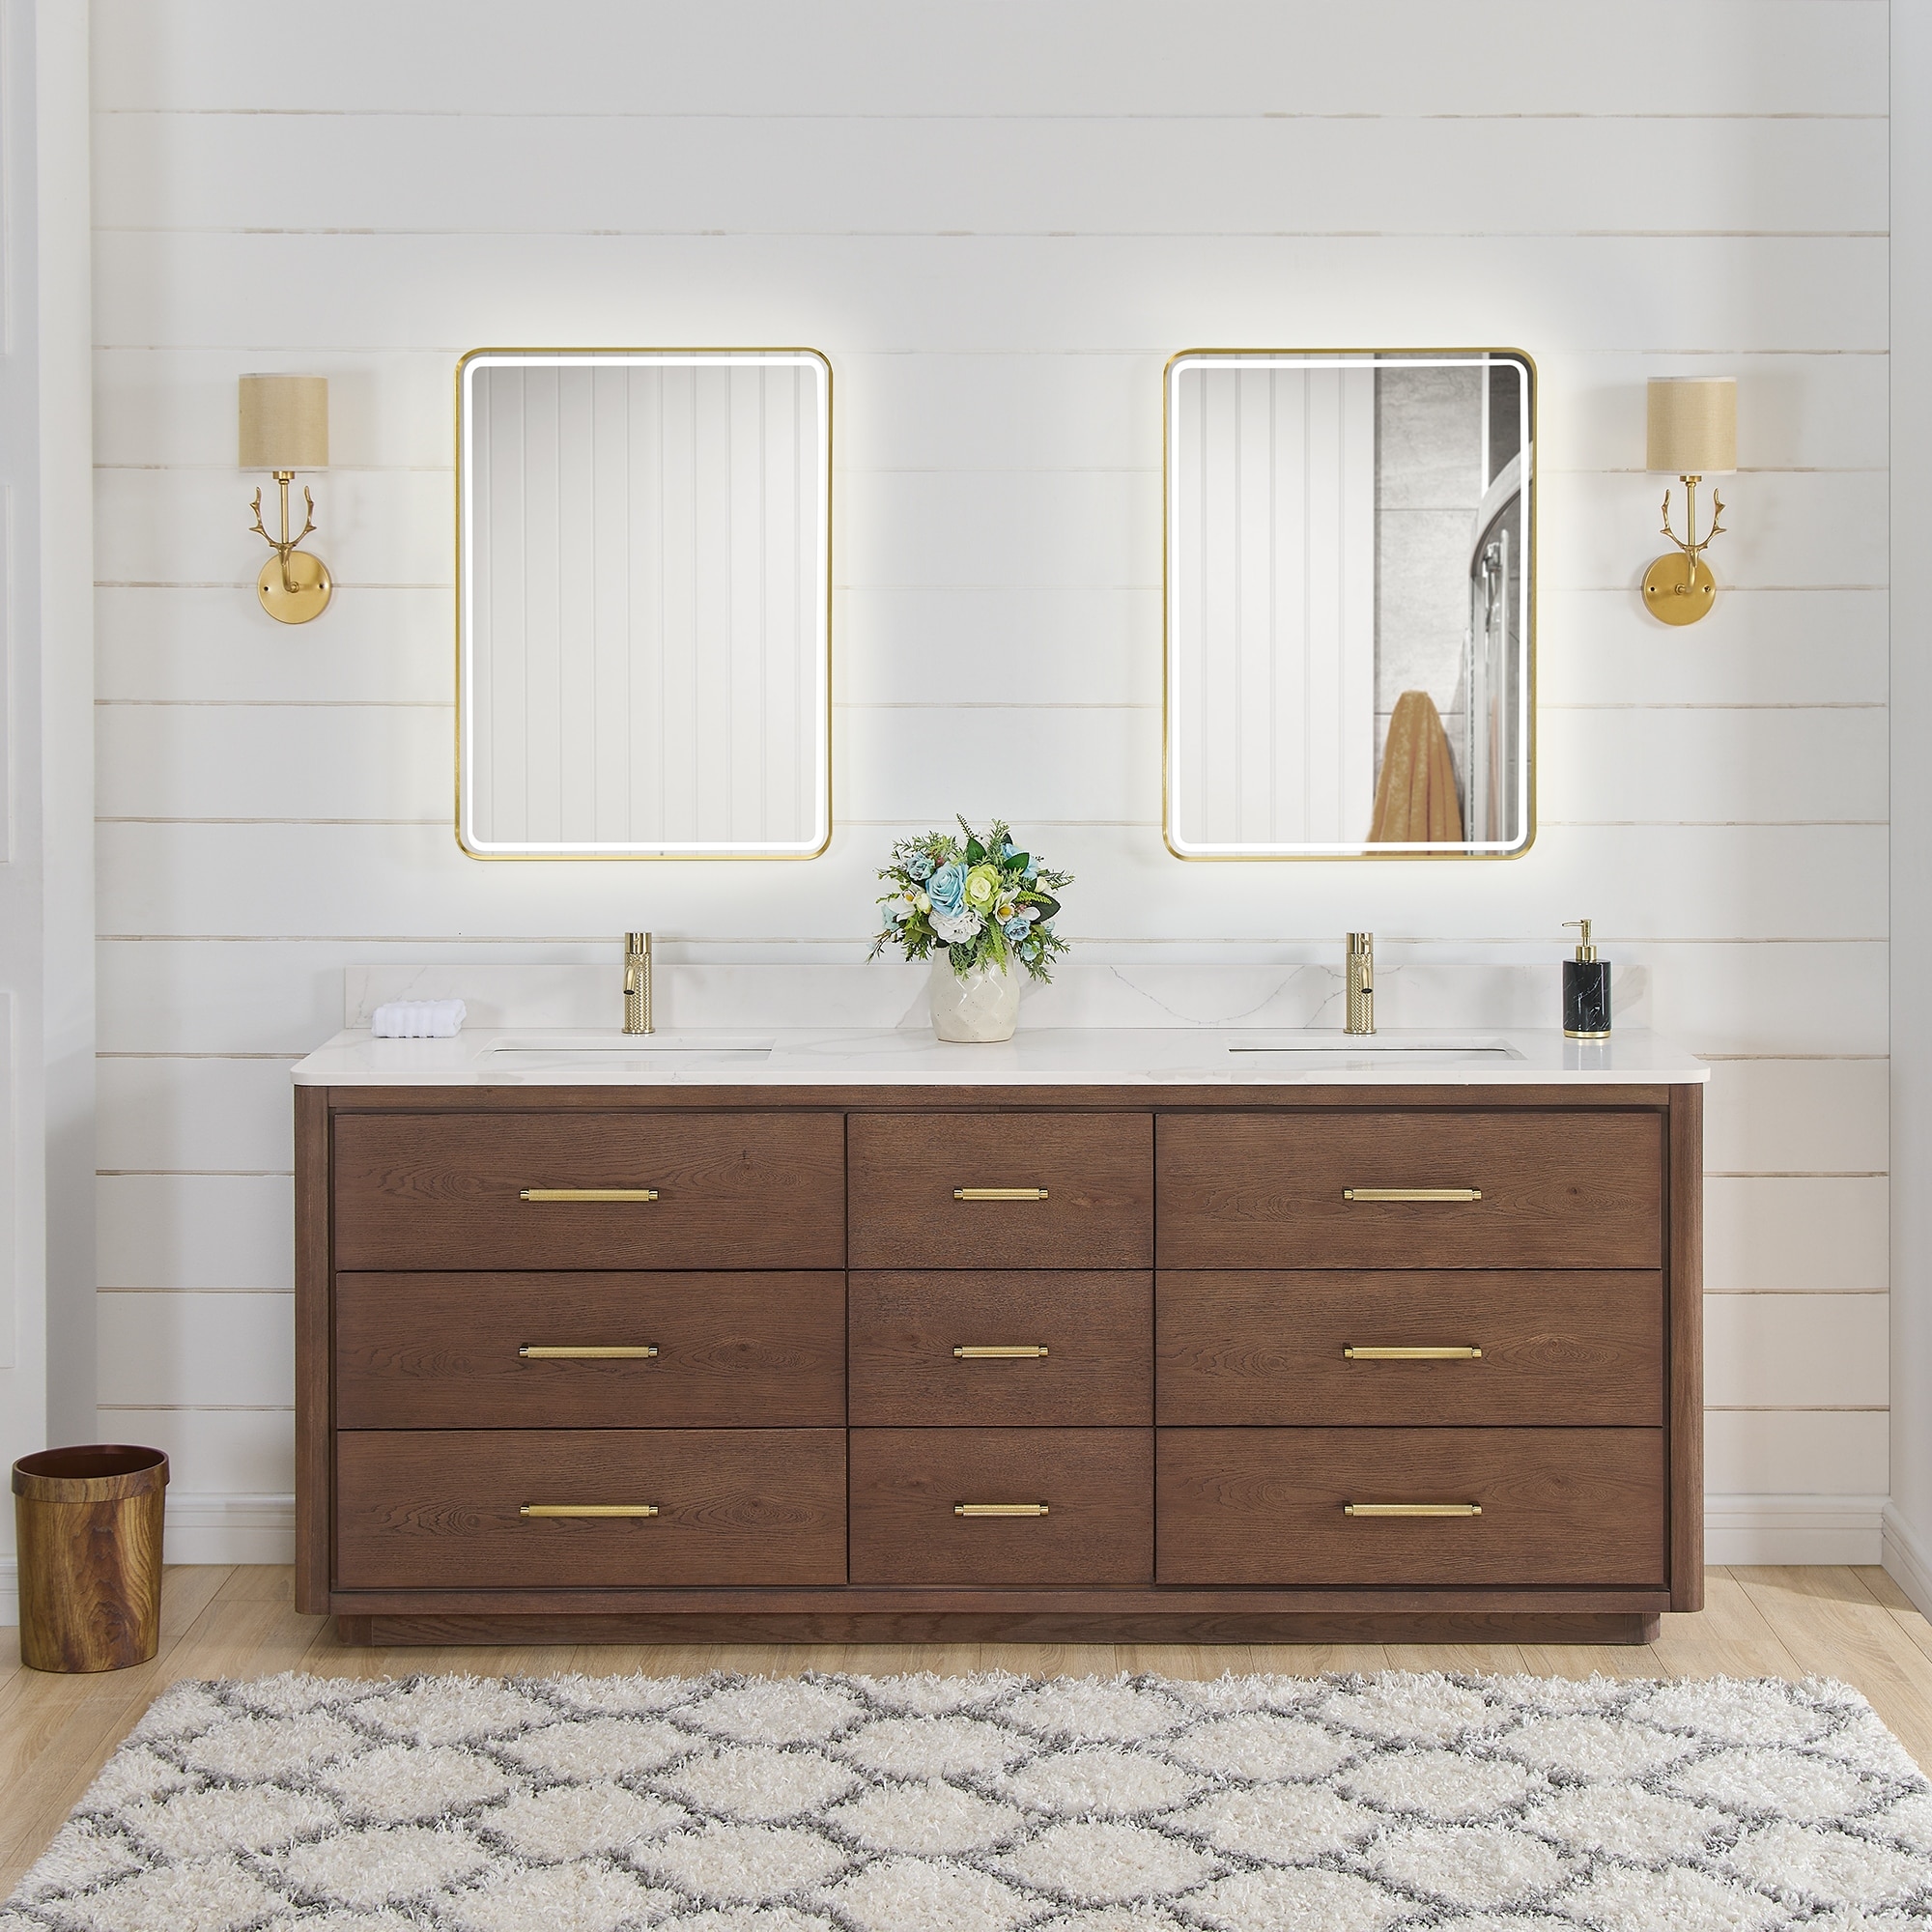 48 in, 3 Drawers Bathroom Vanities - Bed Bath & Beyond